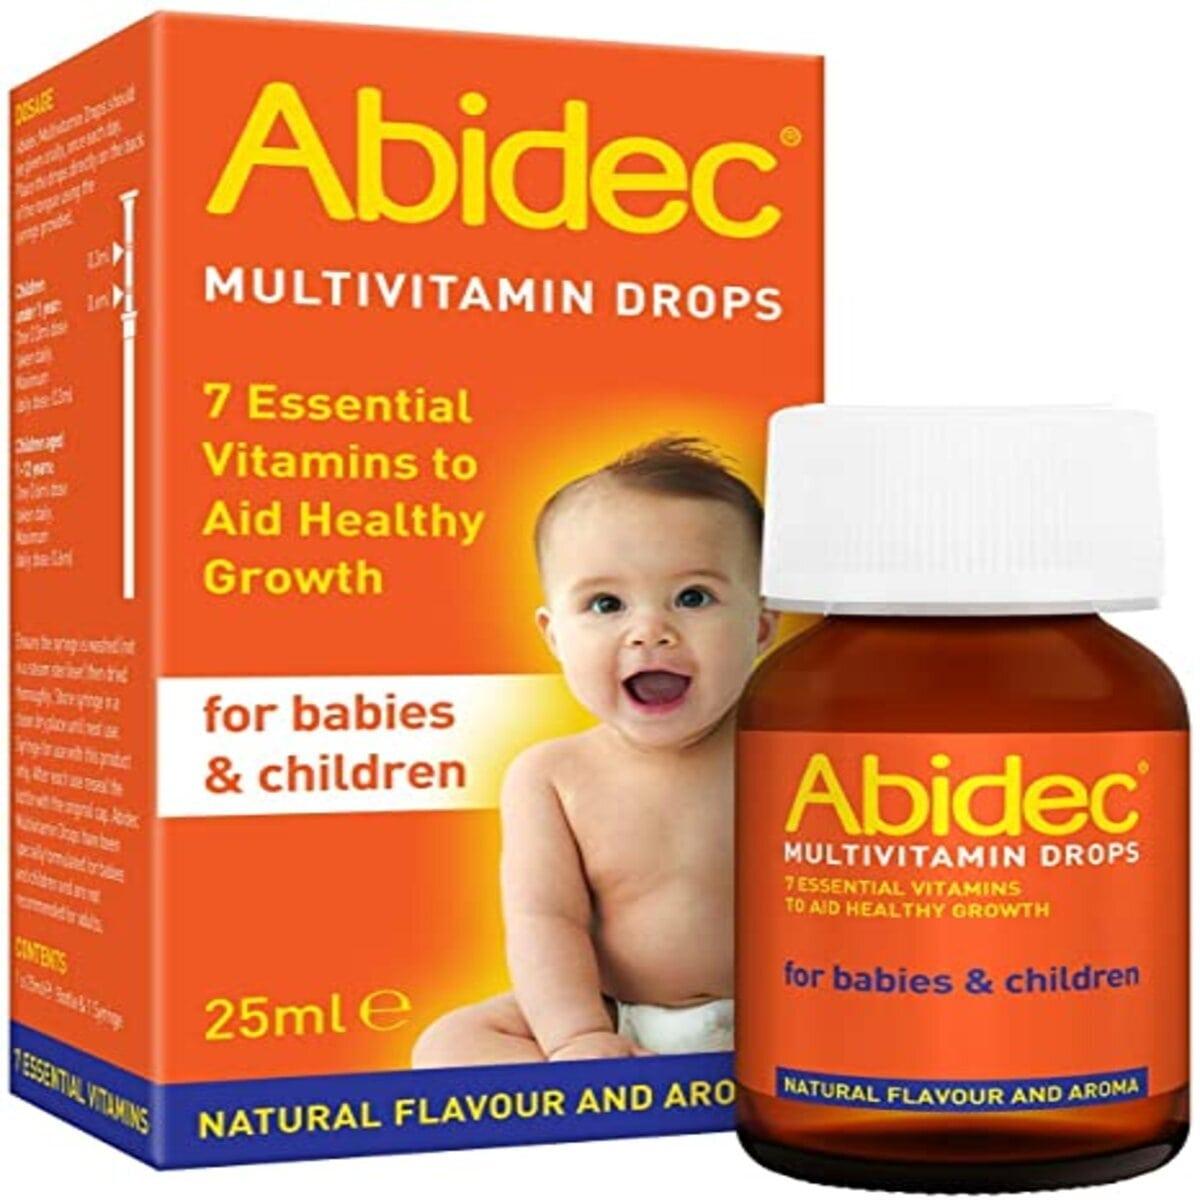 Abidec vitamin drops reviews